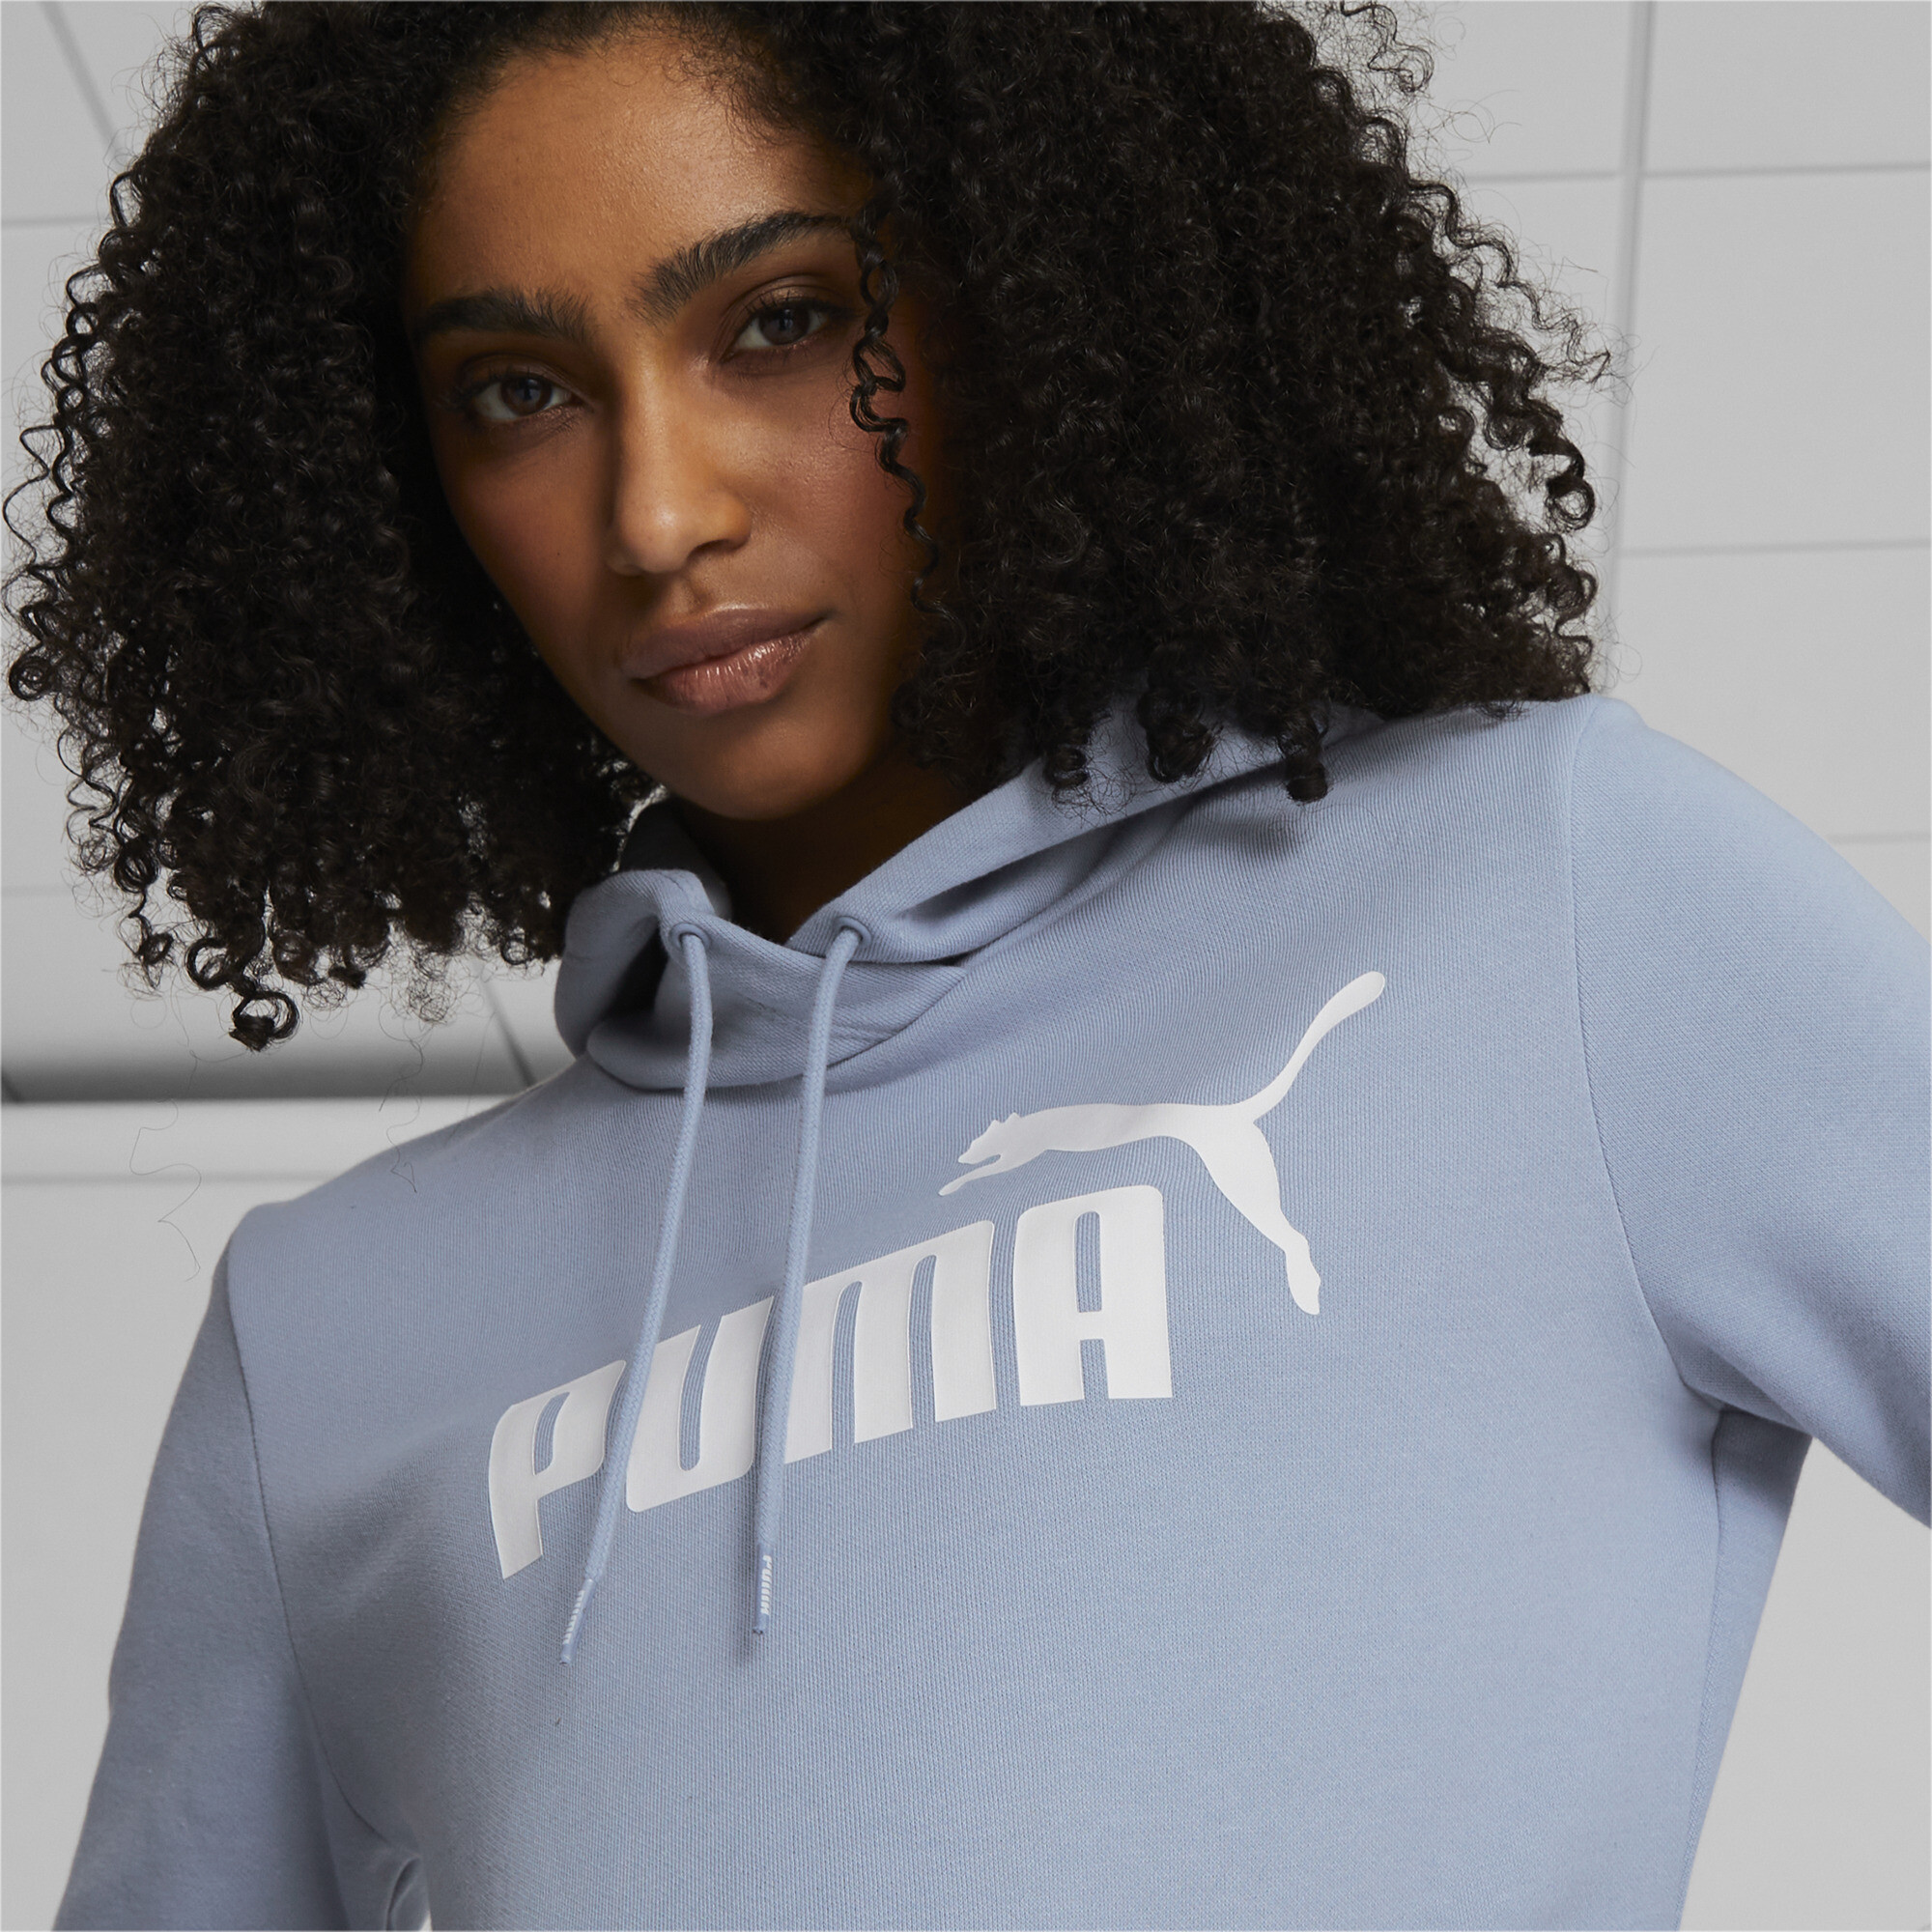 PUMA Women\'s Essentials Logo Hoodie | eBay